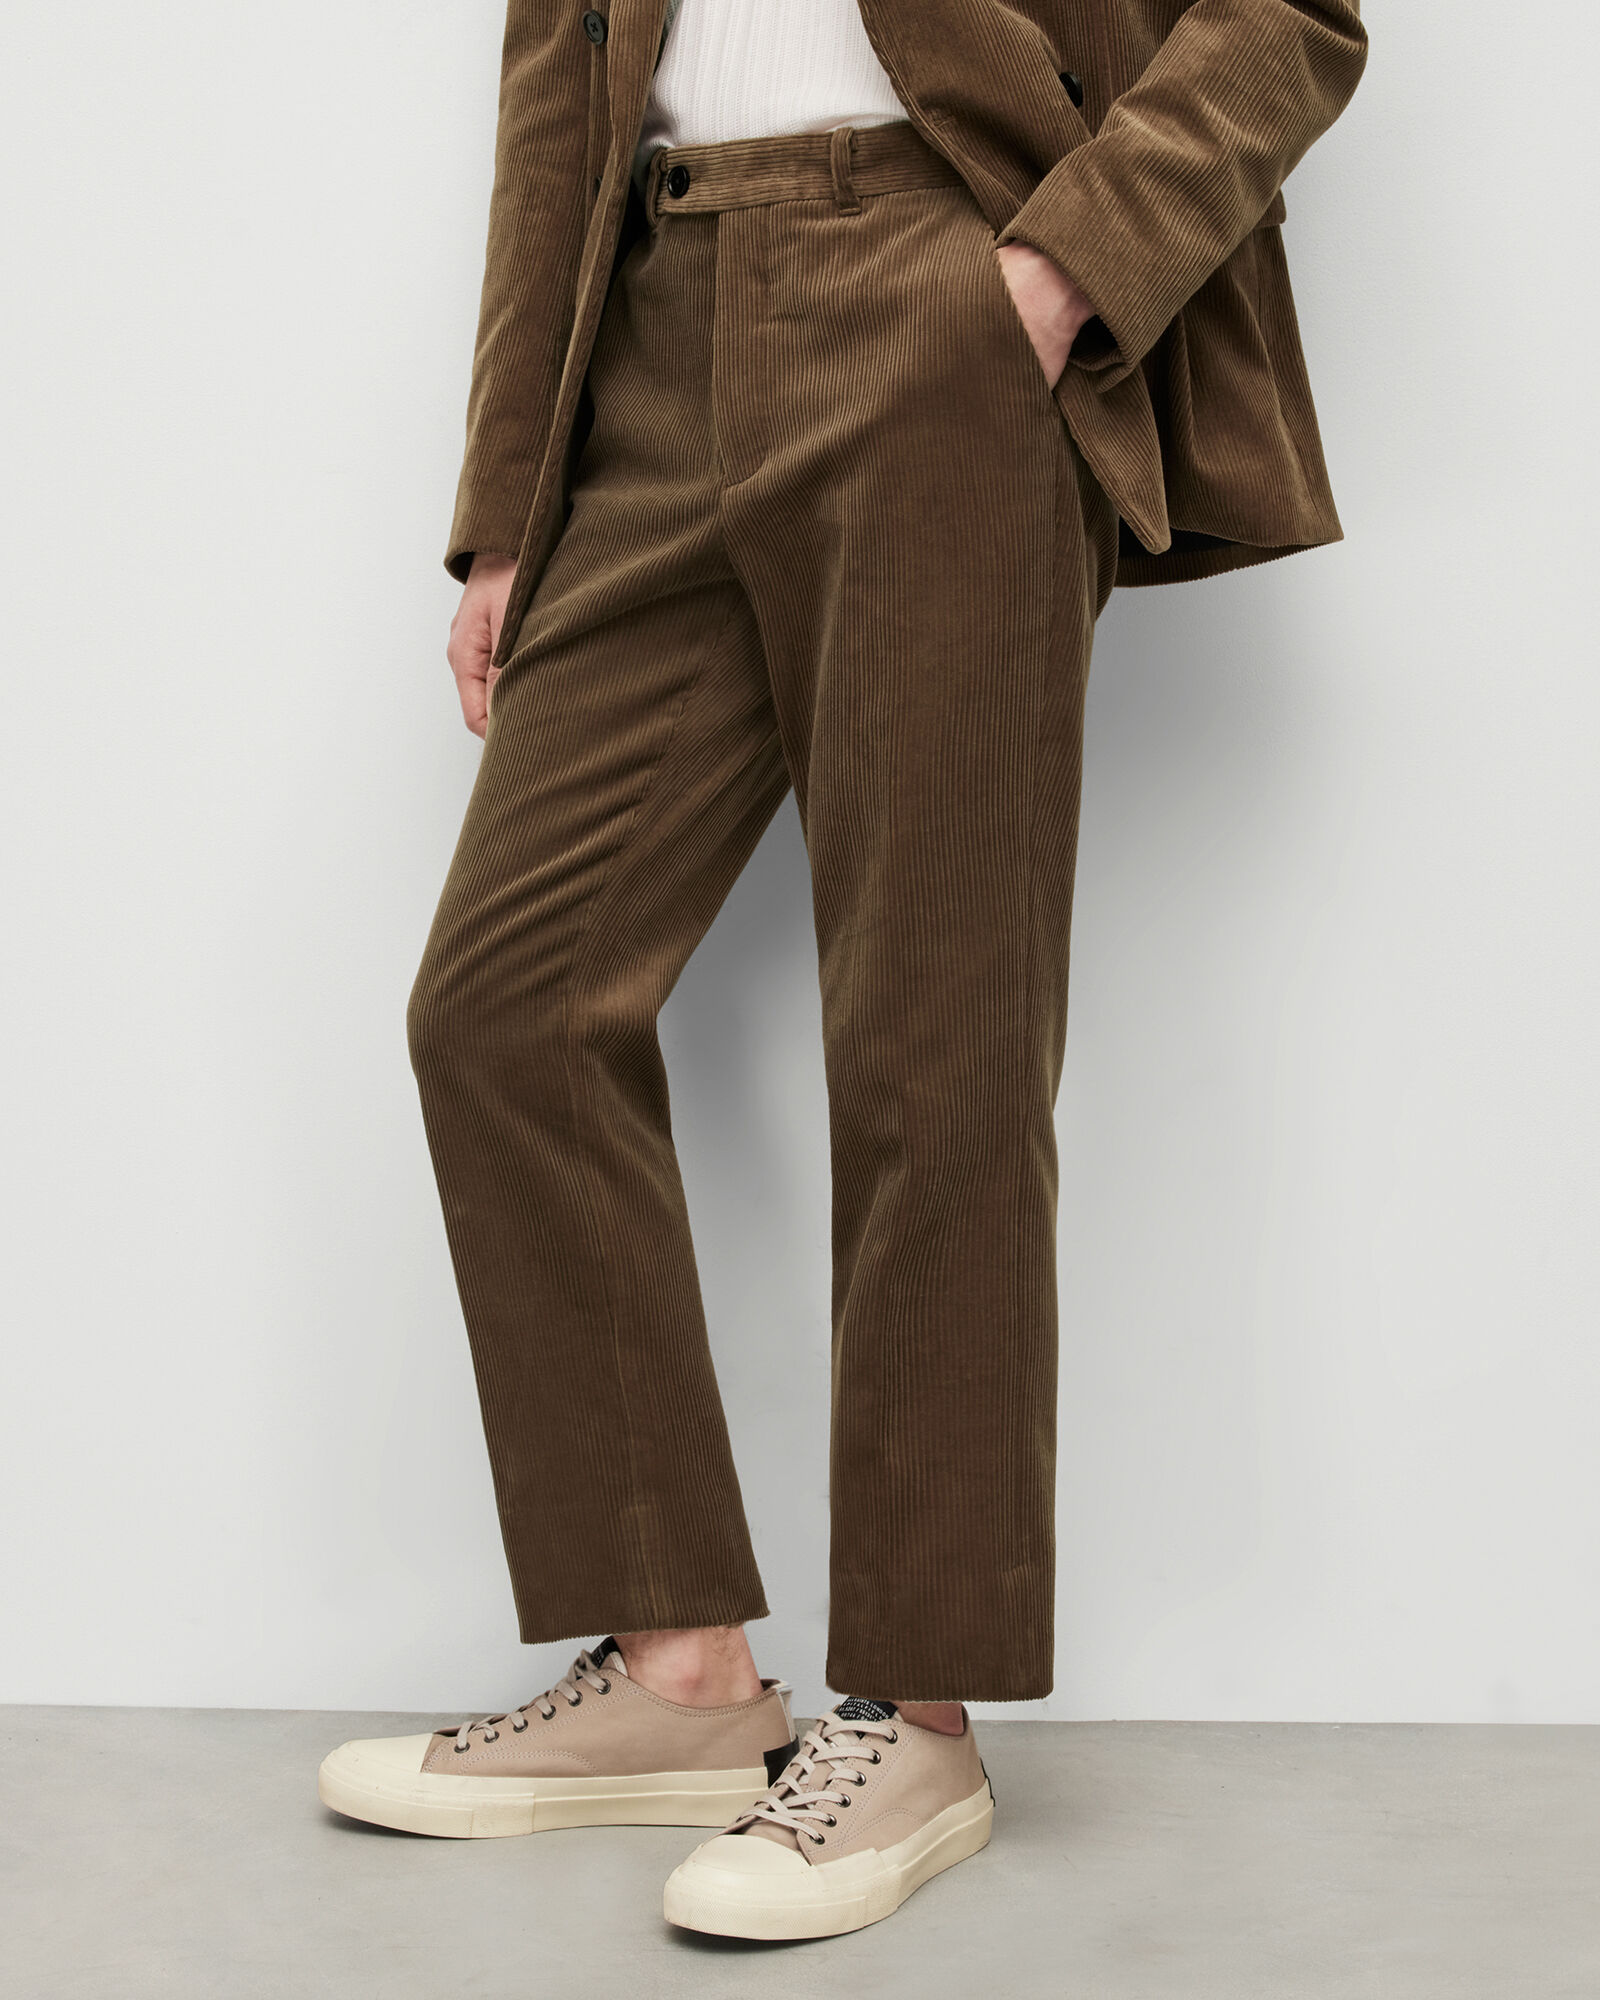 NIKE ACG Ladies Brown Corduroy Trousers  BNWT  6  eBay